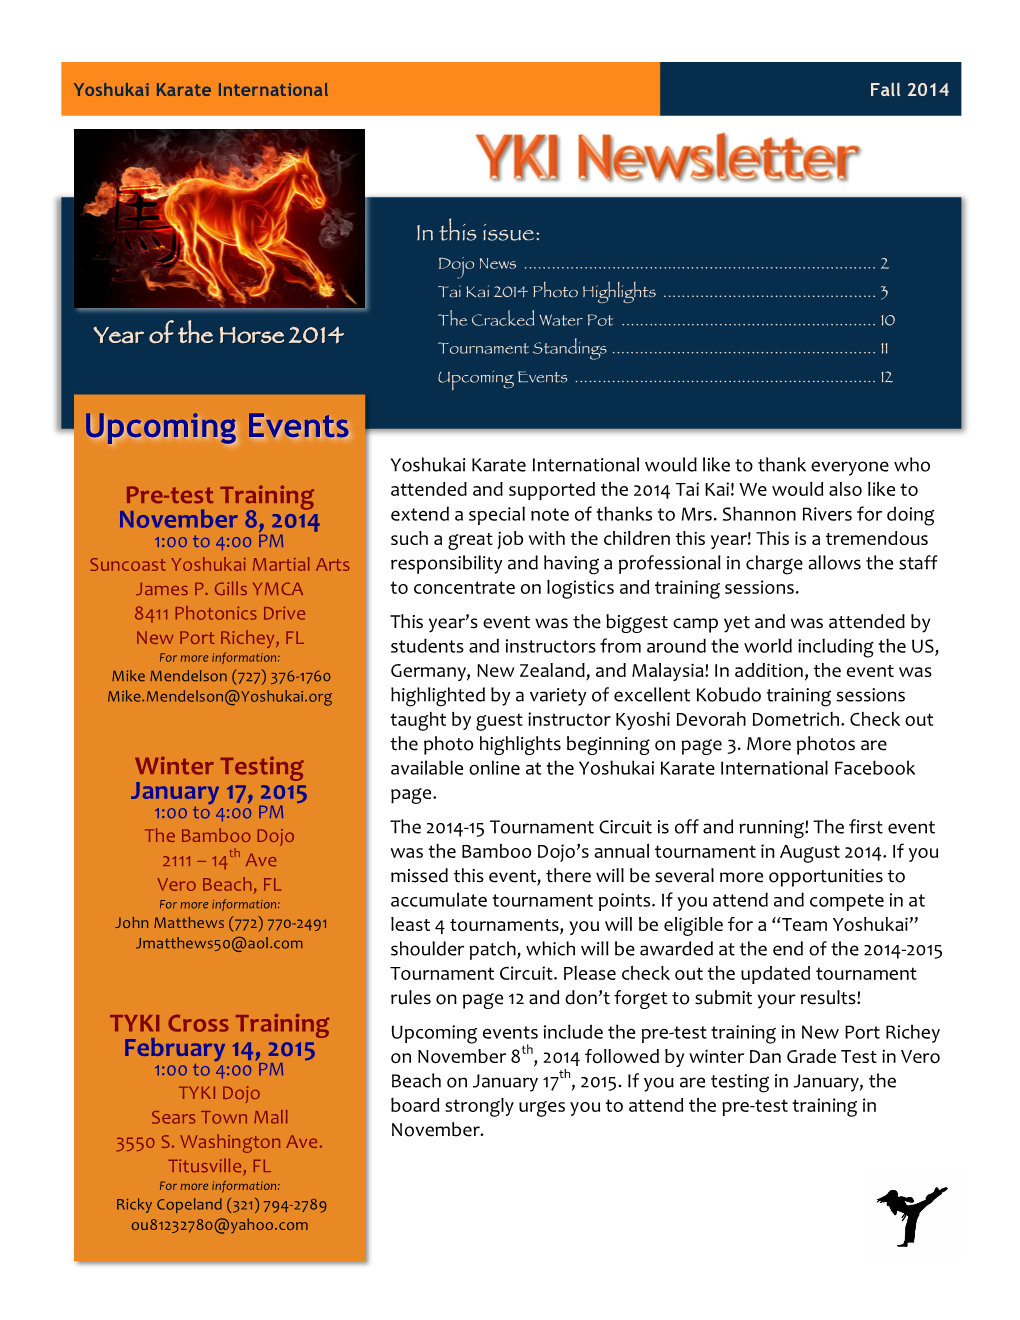 YKI Newsletter 2014Q3